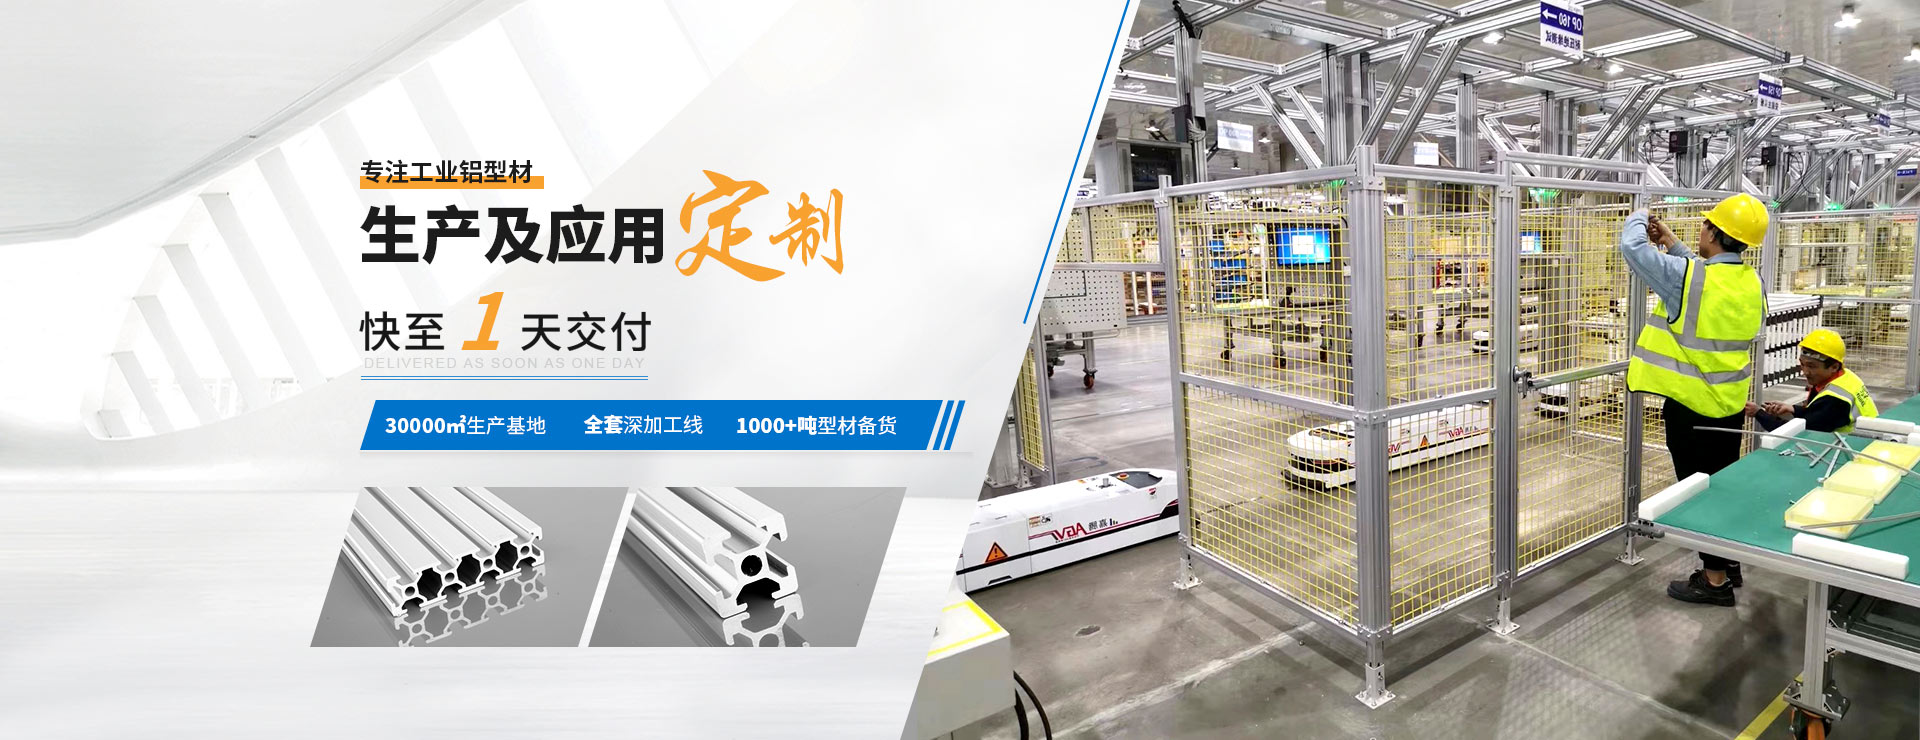 啟域專注工業鋁型材生產及應用定制(zhi)快至1天(tian)交付